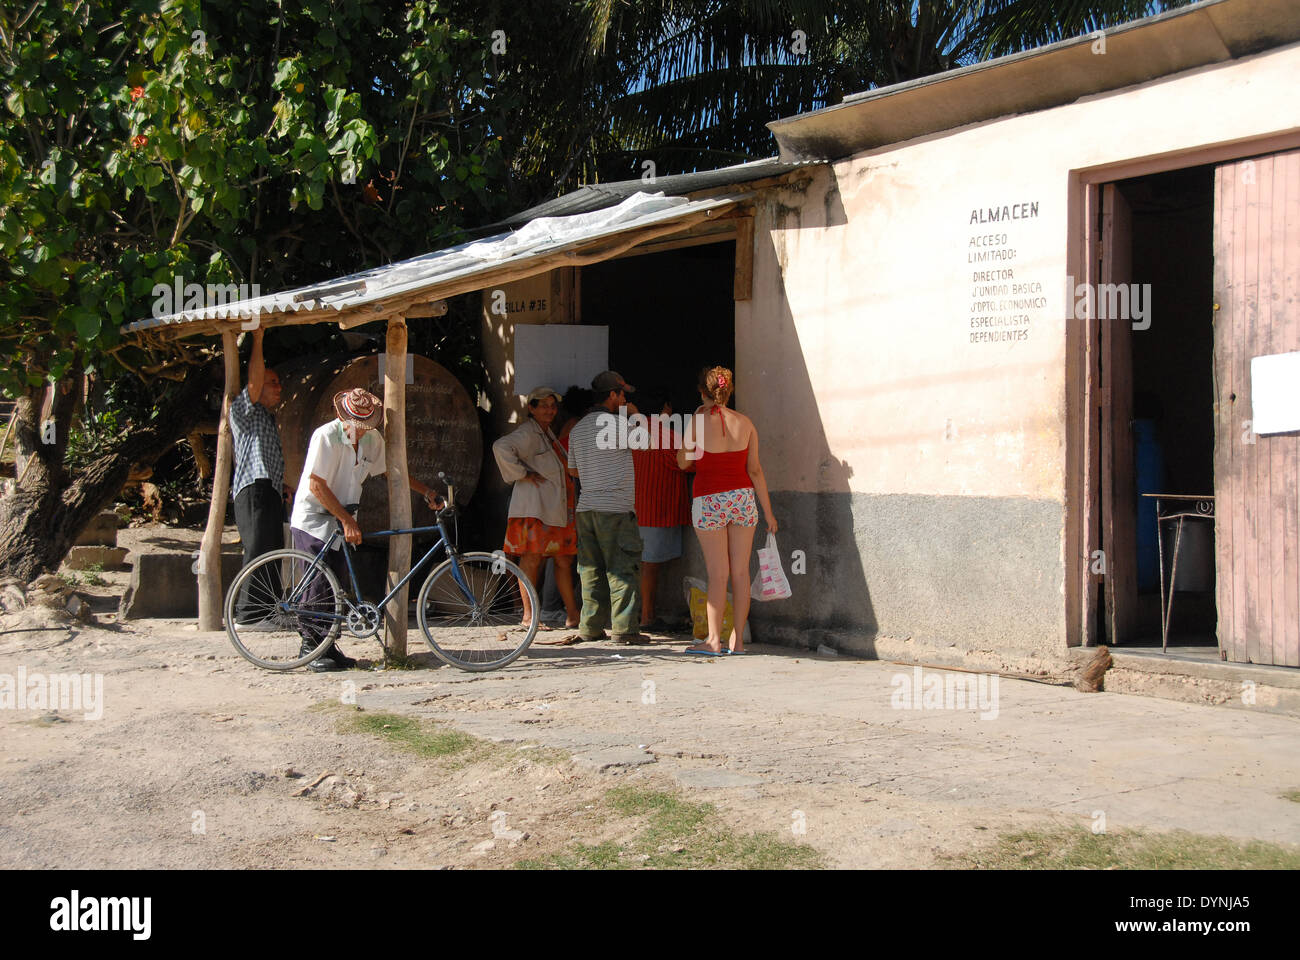 Eine kubanische Ration-Shop in einem Dorf in der Nähe von Guardalavaca, mit kubanischen Volk warten um bedient zu werden Stockfoto